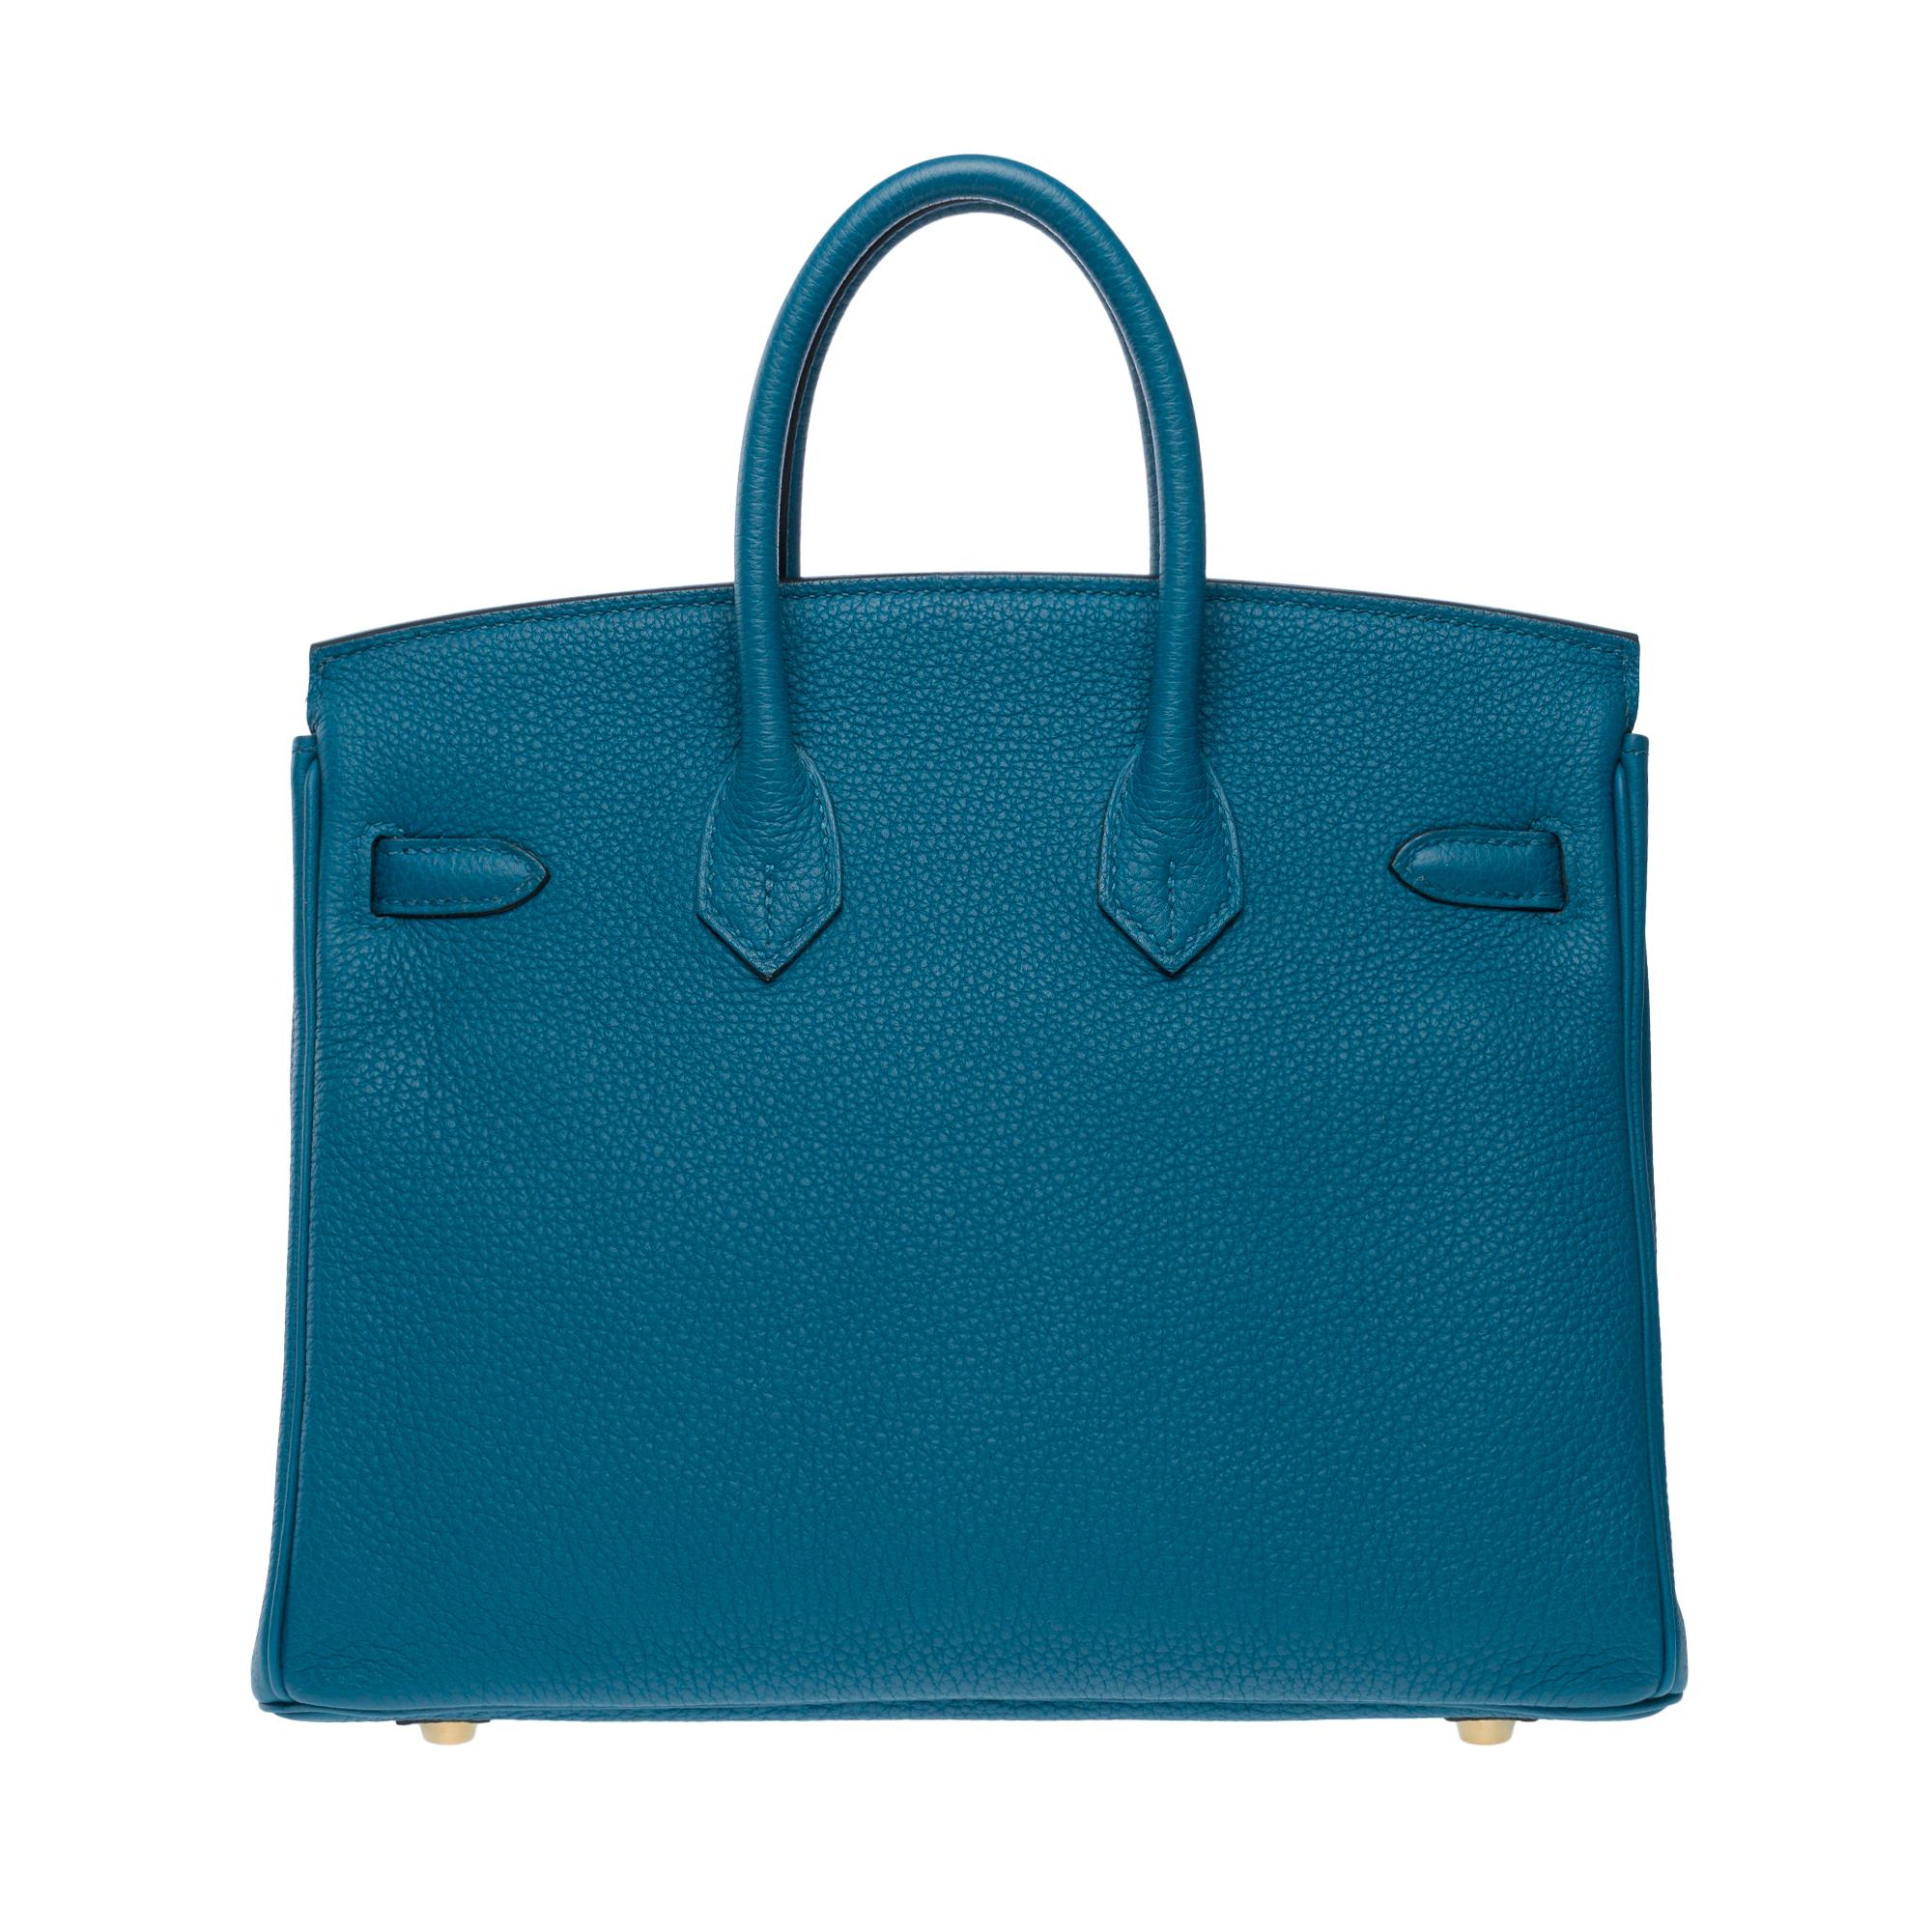 Amazing Hermes Birkin 25cm handbag in Togo Blue Cobalt leather, GHW For Sale 1